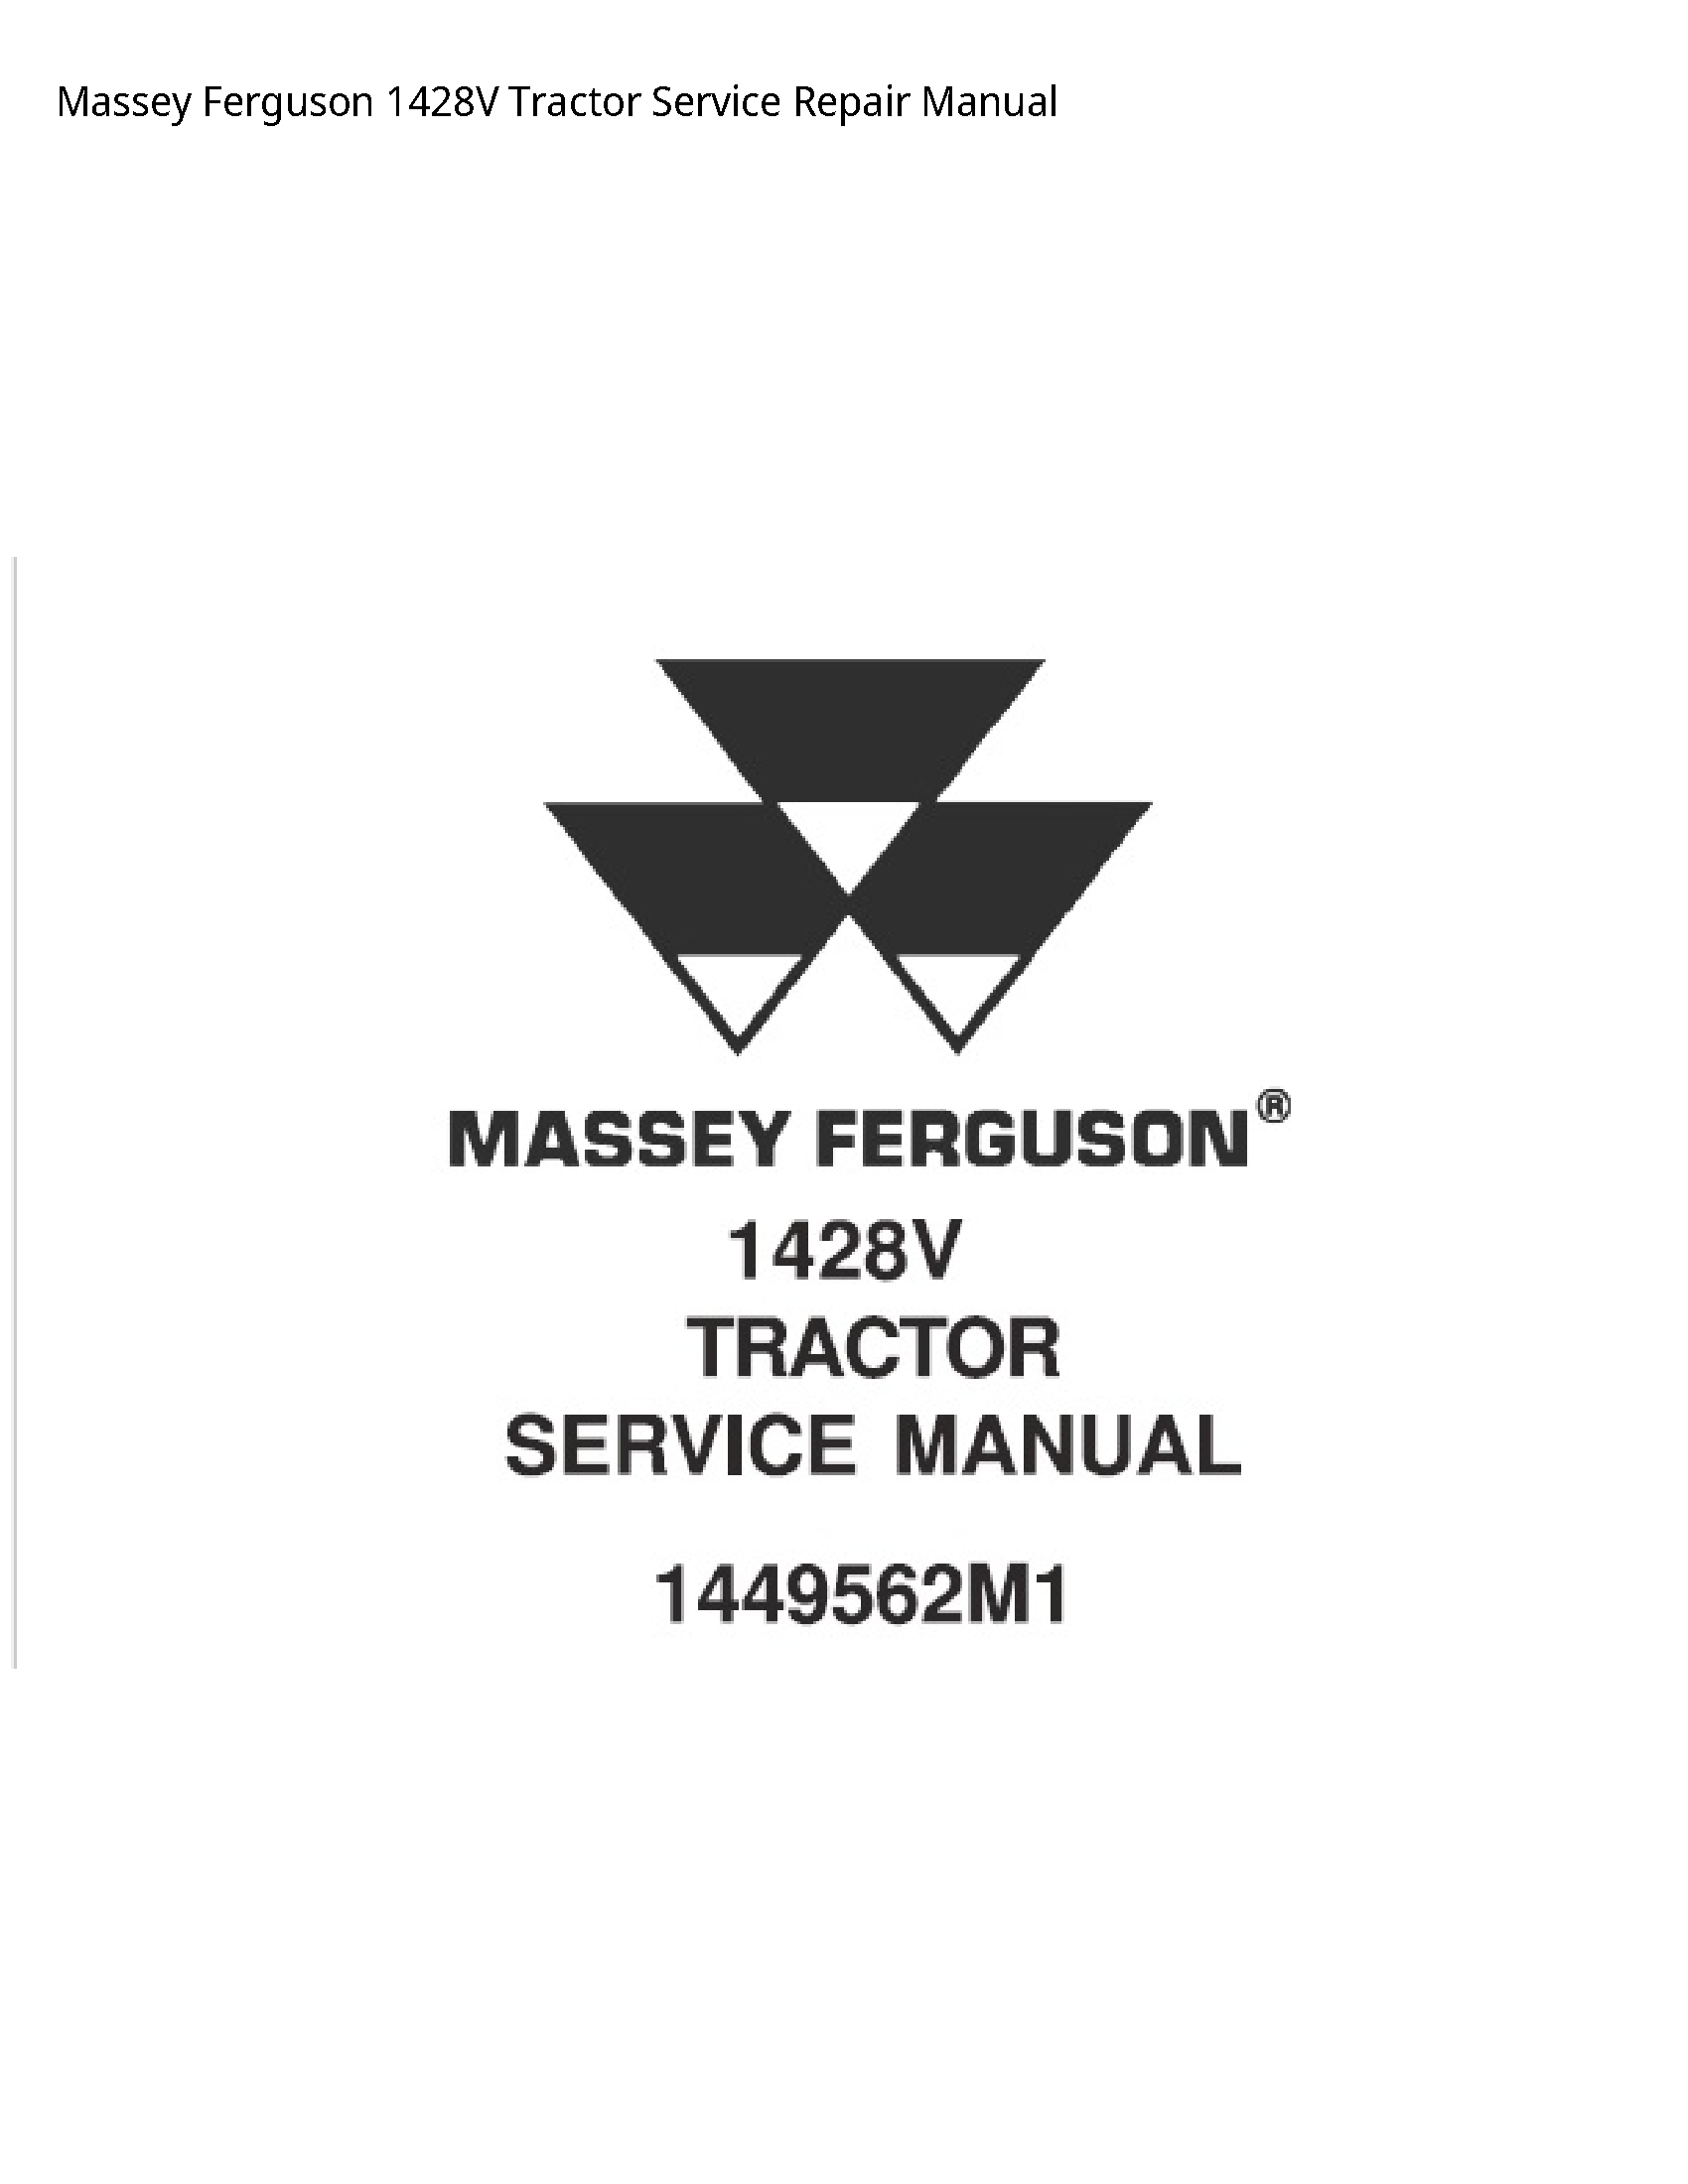 Massey Ferguson 1428V Tractor manual